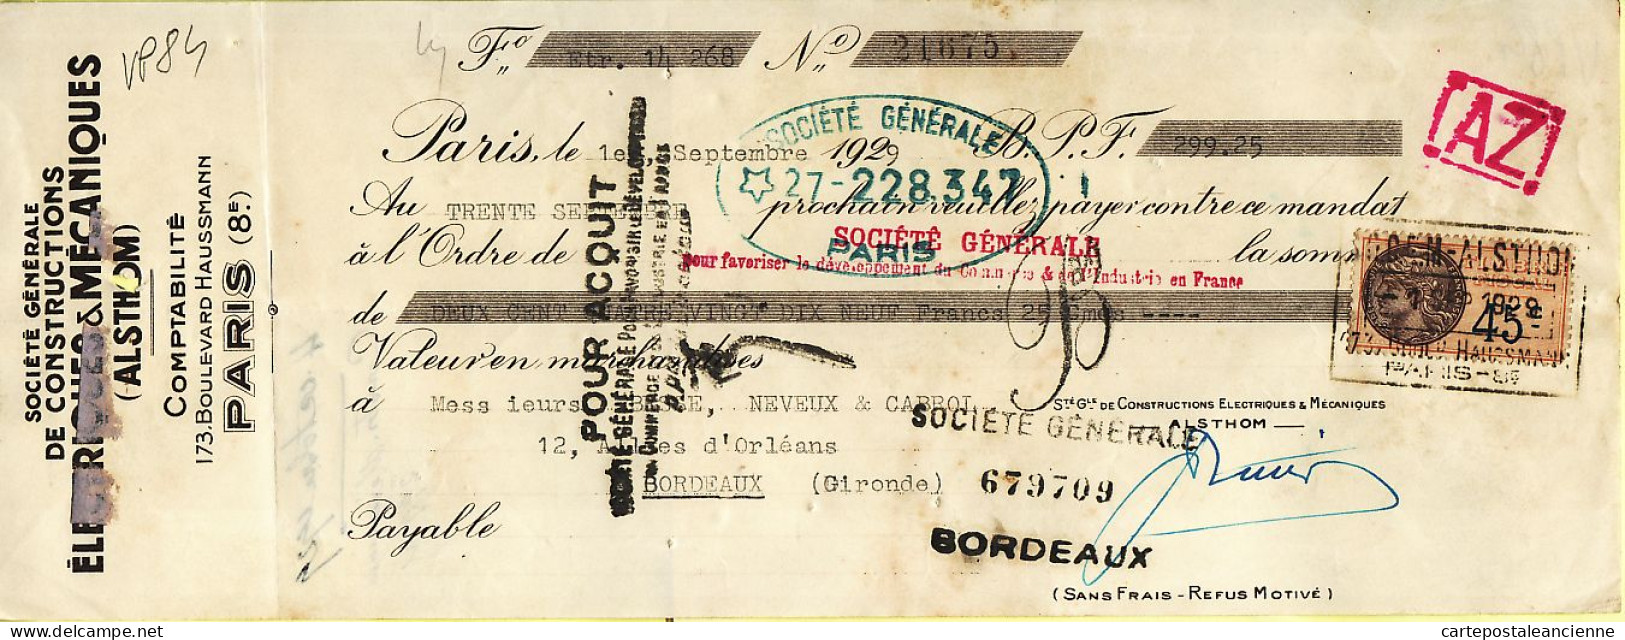 31300 / PARIS ALSTHOM Constructions Electriques Boulevard Haussmann Mandat-Chèque 1929 à BESSE NEVEUX CABROL - Cheques En Traveller's Cheques